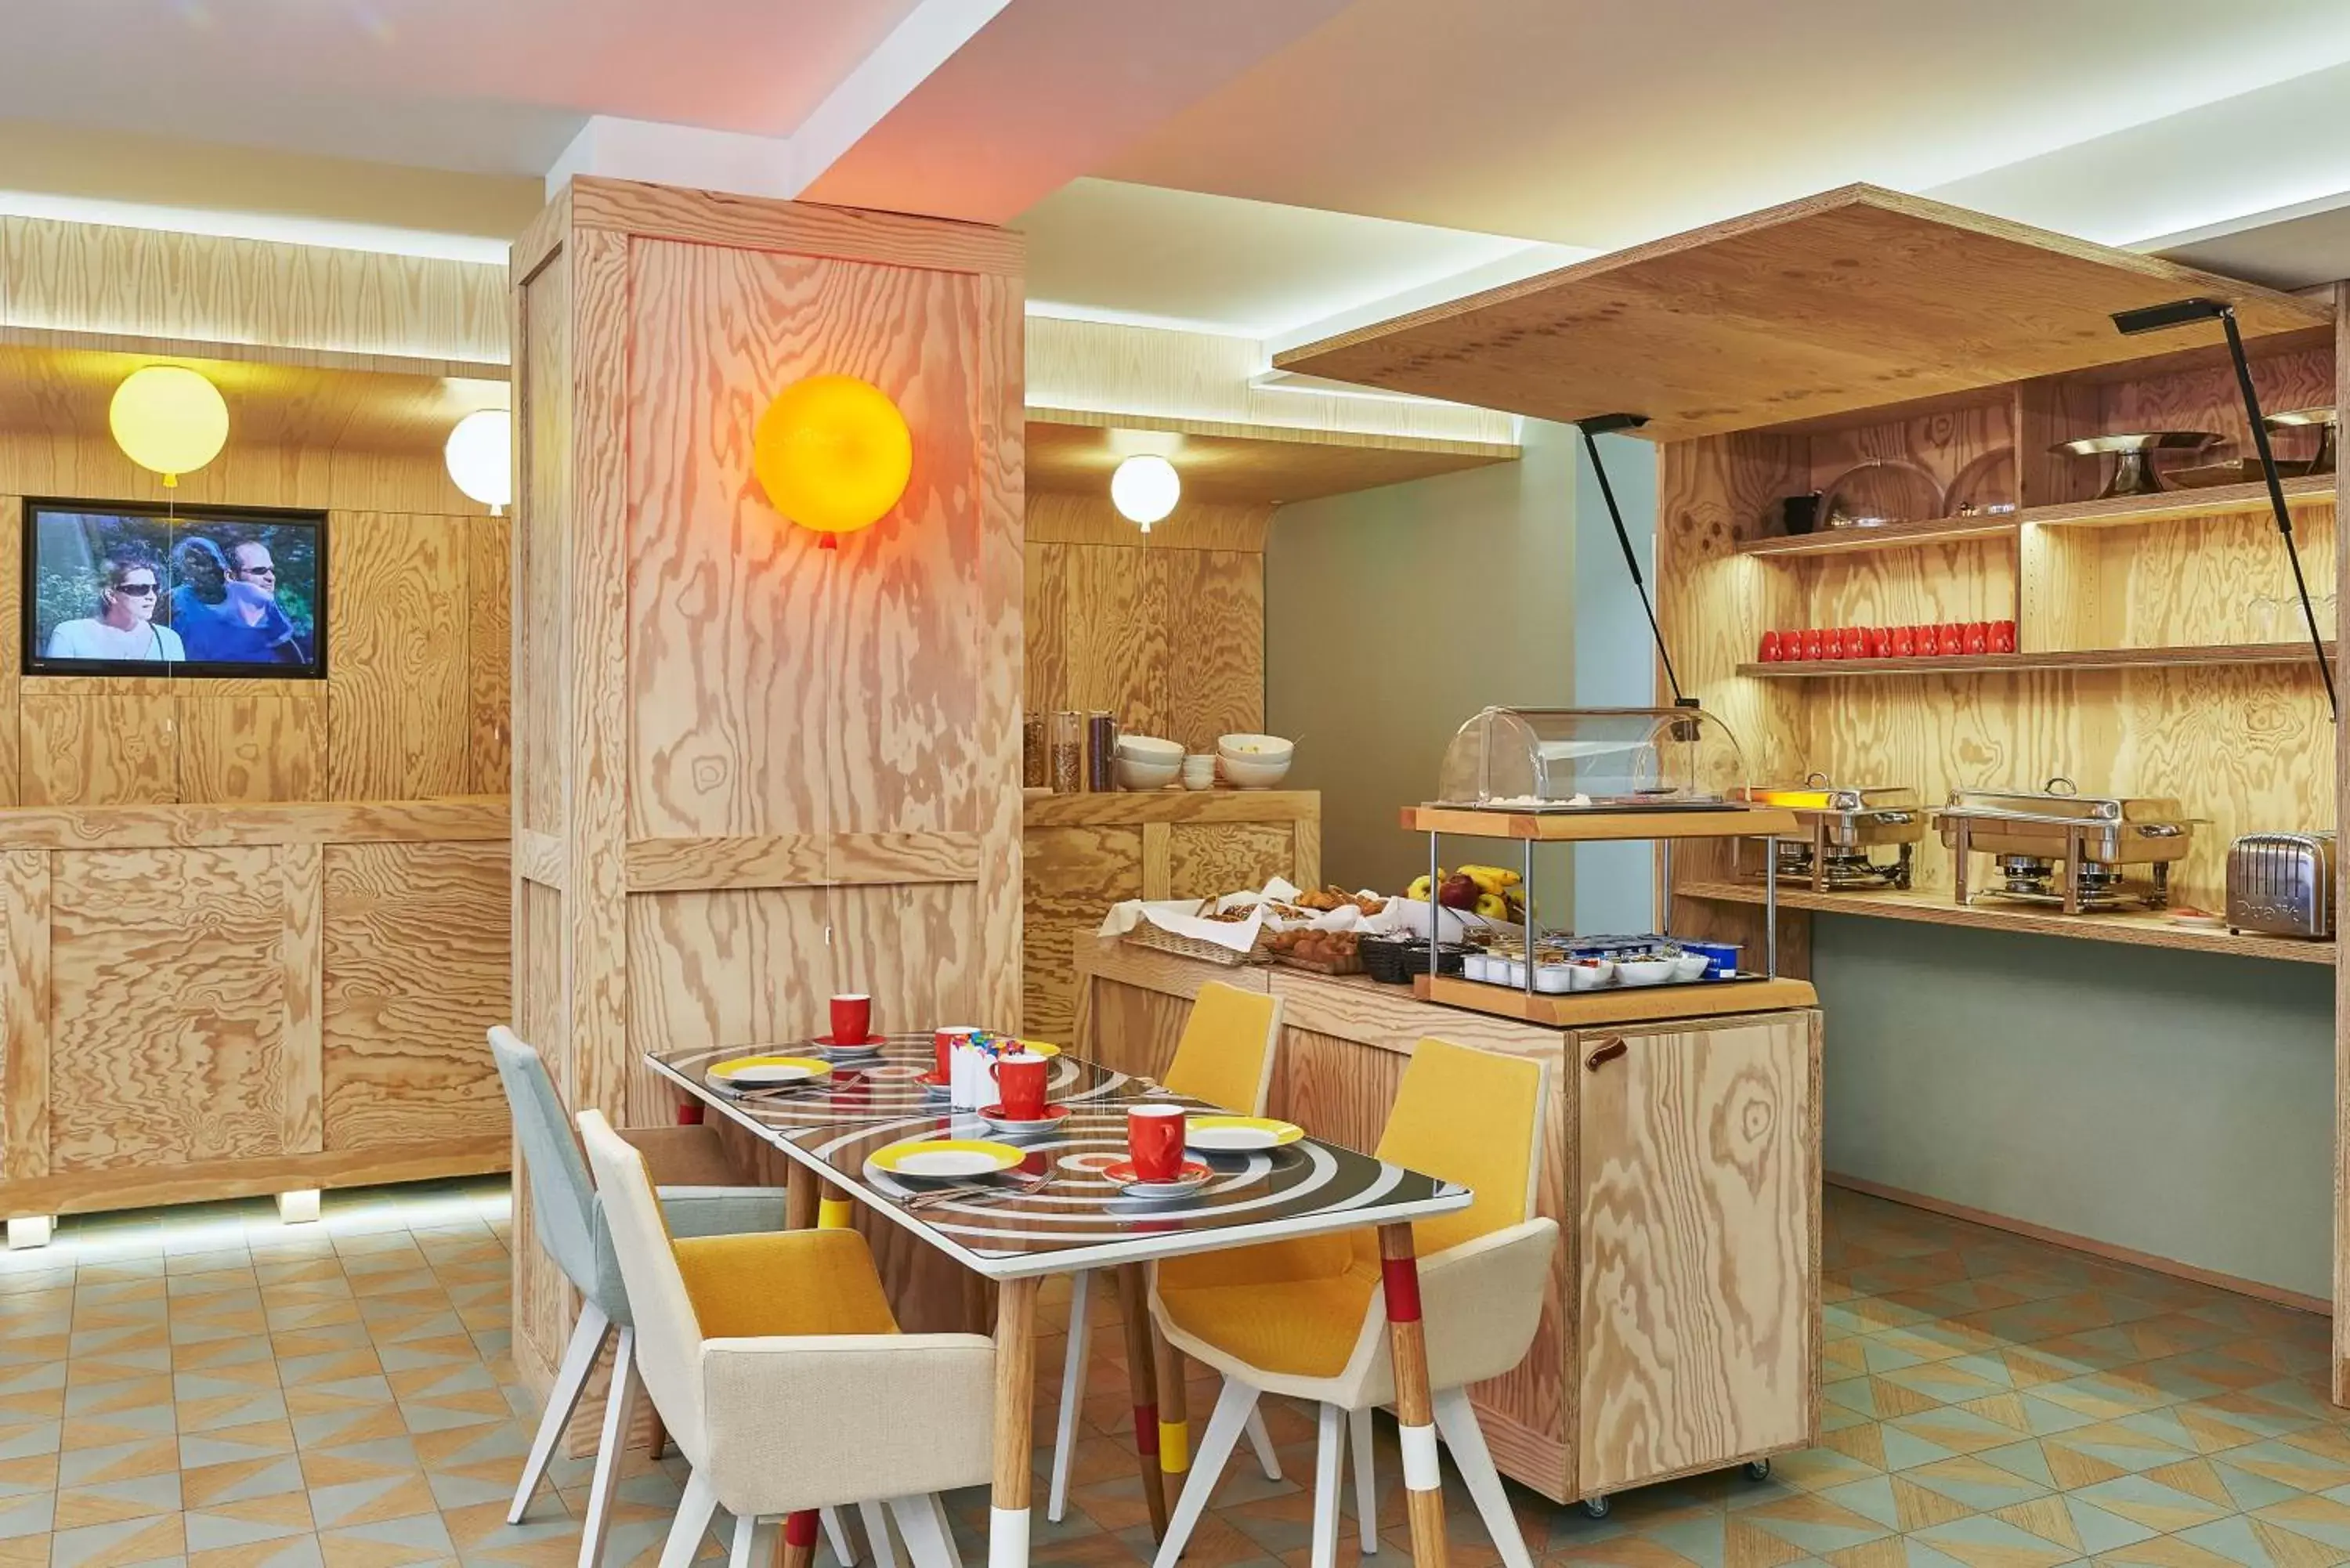 Buffet breakfast, Restaurant/Places to Eat in Hotel Joke - Astotel